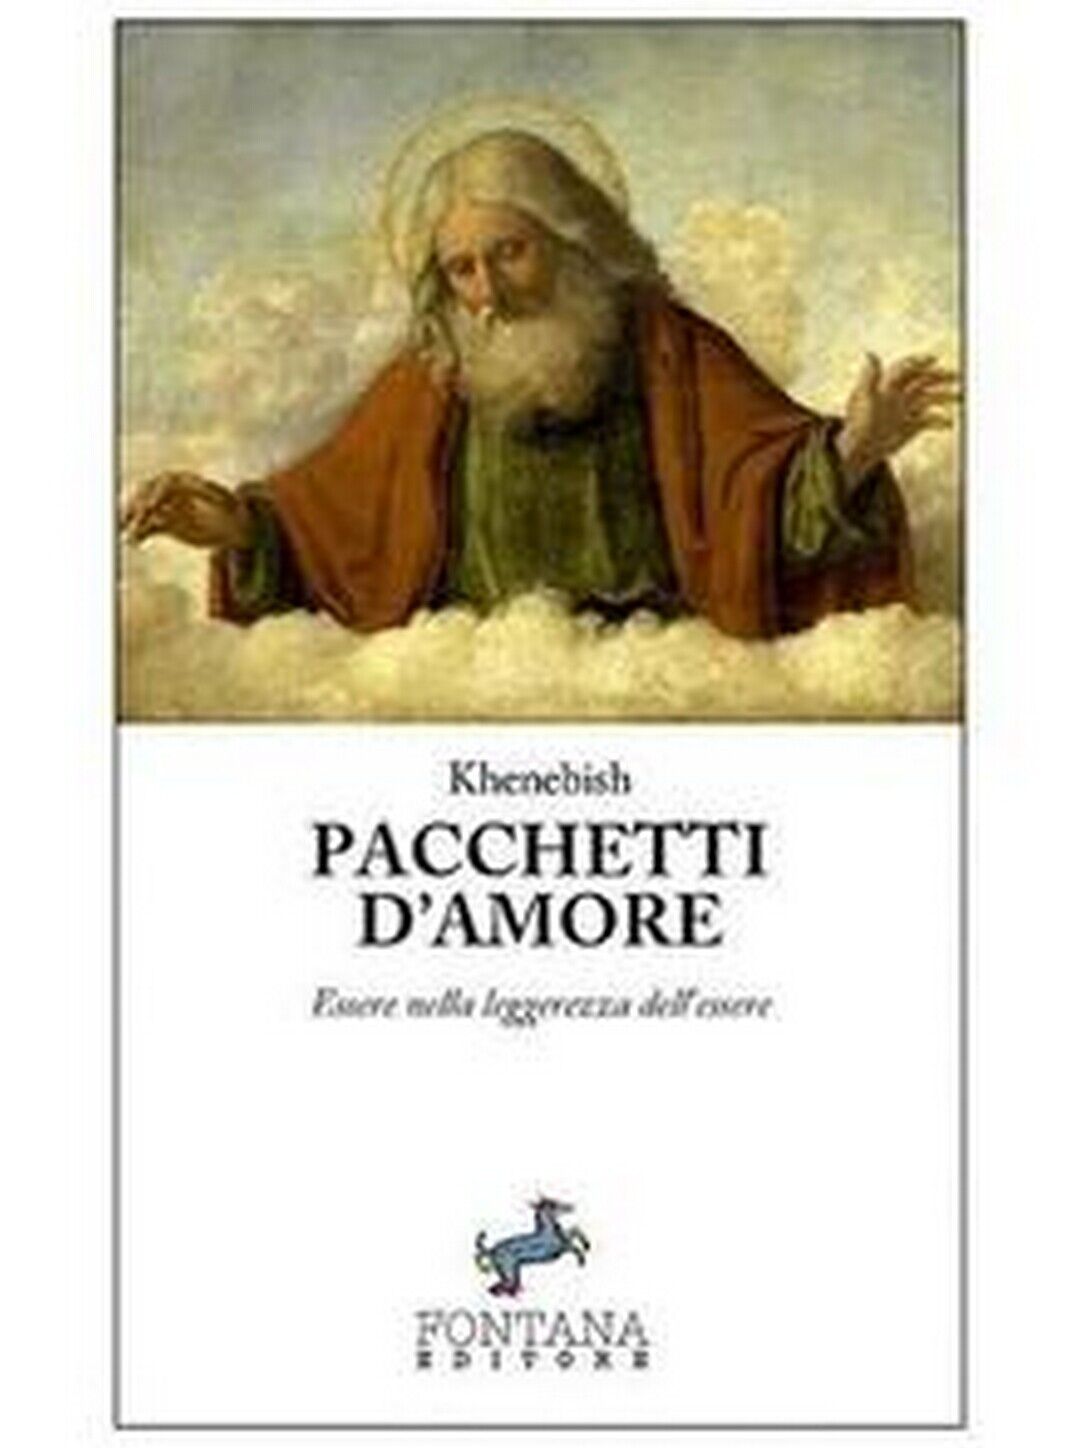 Pacchetti d'amore  di Khenebish,  2020,  Fontana Editore